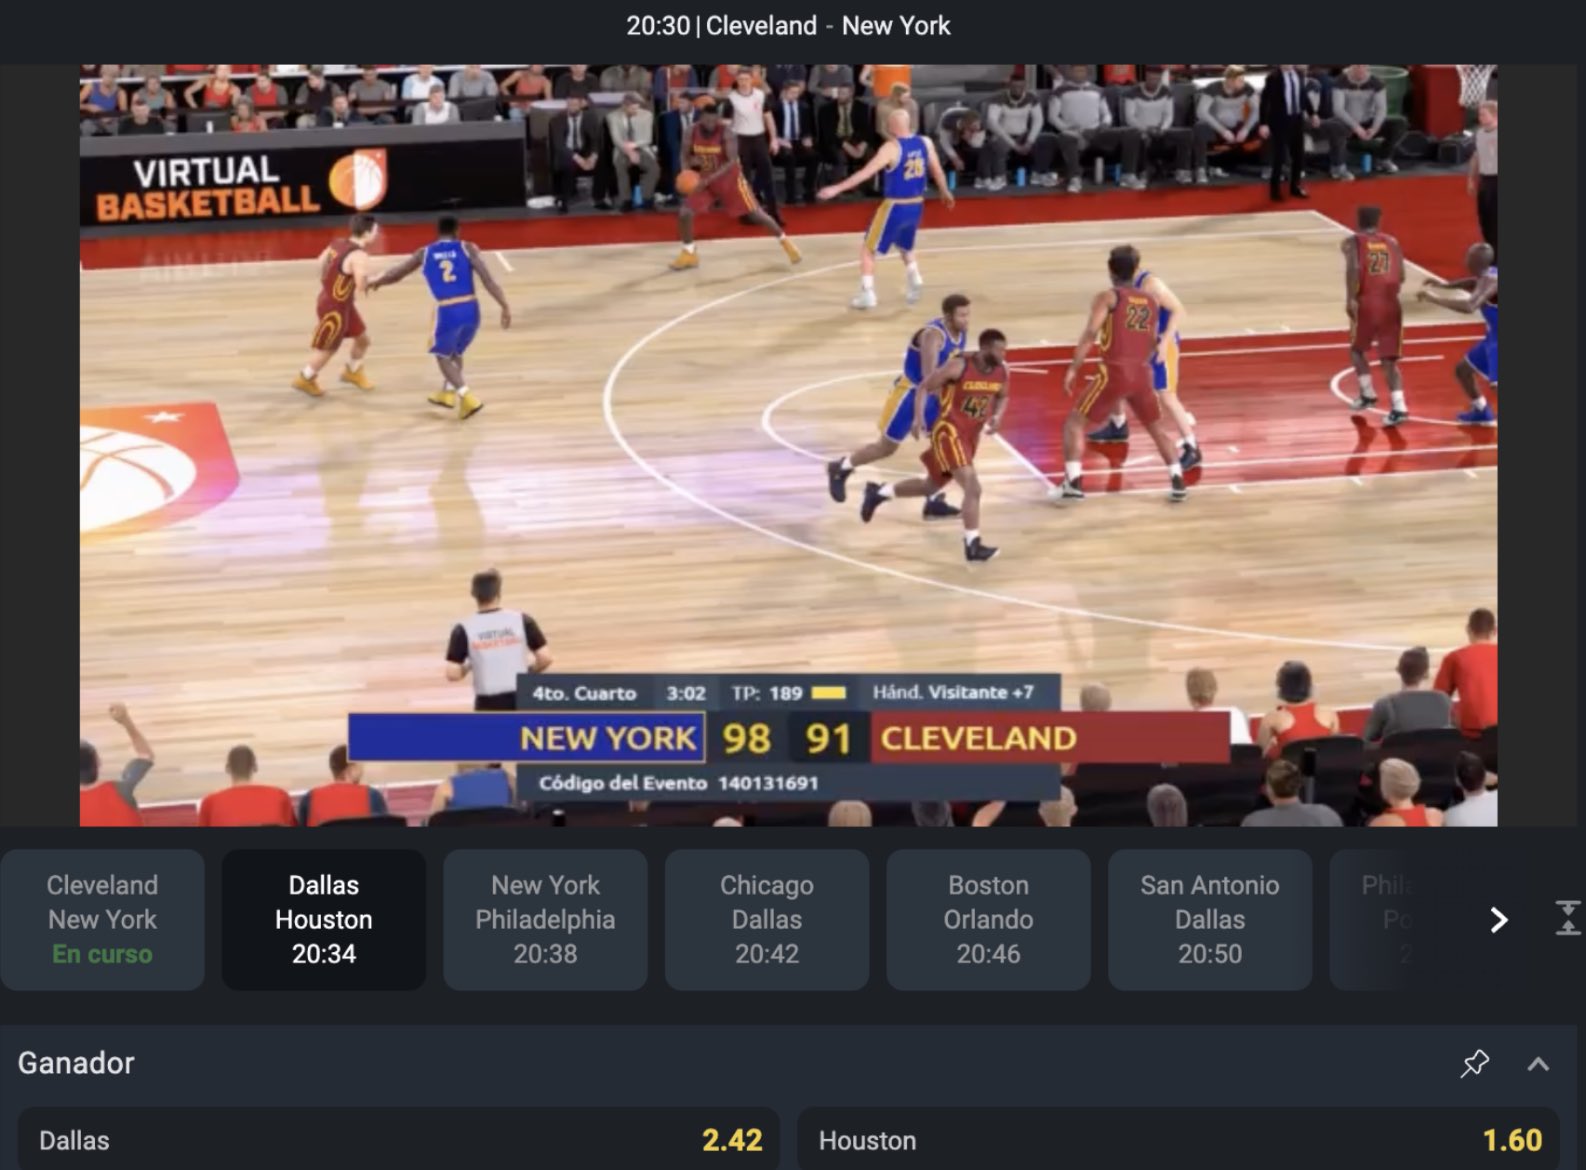 basquet virtual en betano